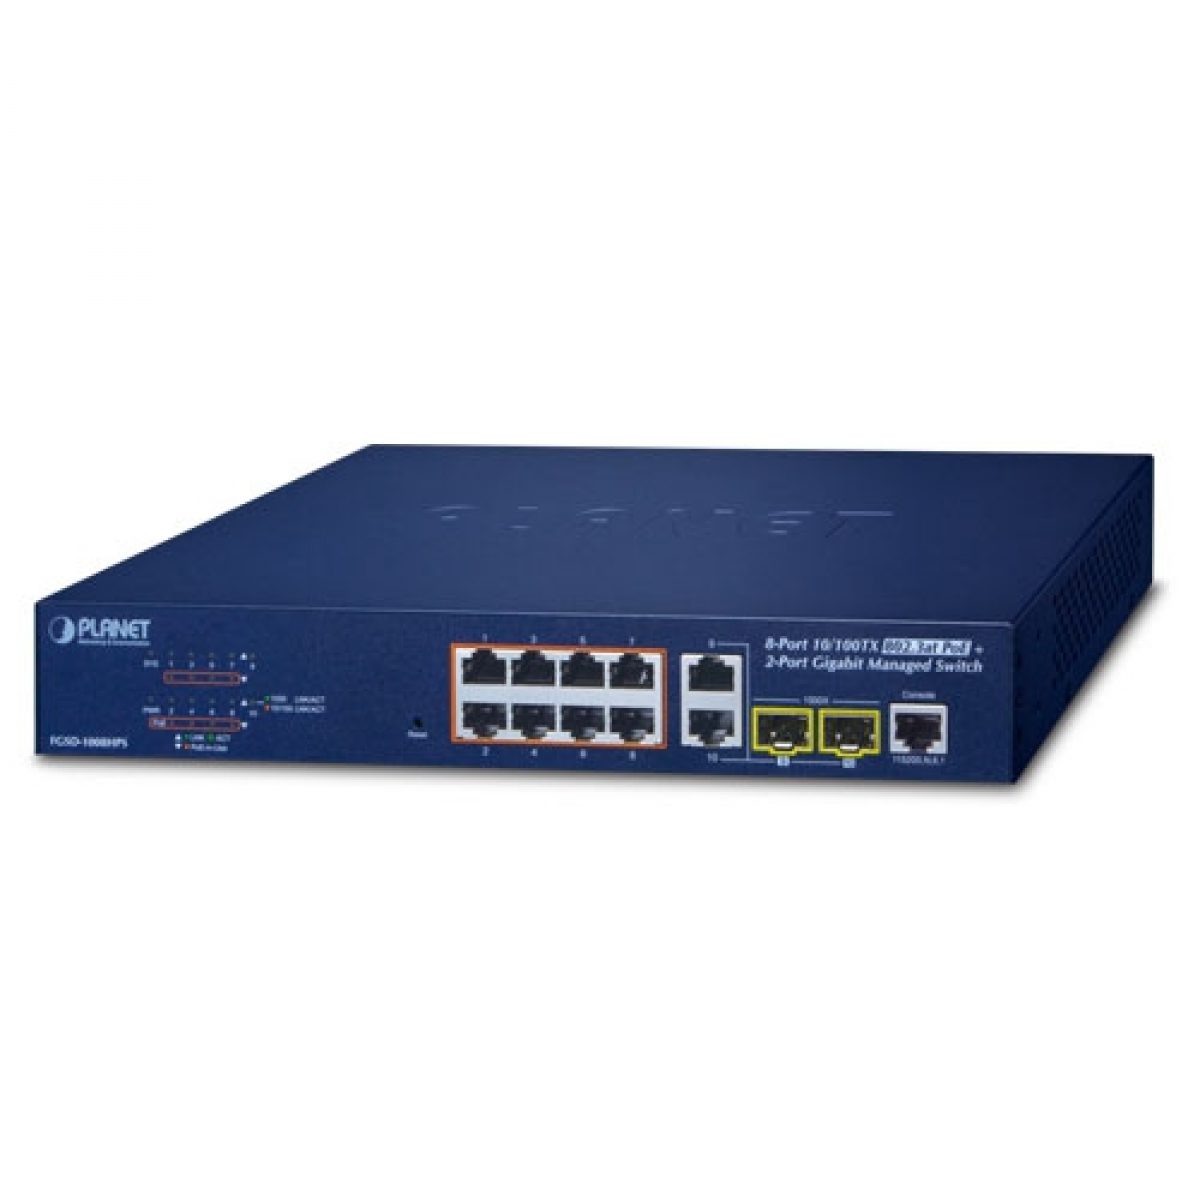 FGSD-1008HPS 8-Port 10/100TX 802.3at PoE + 2-Port Gigabit TP